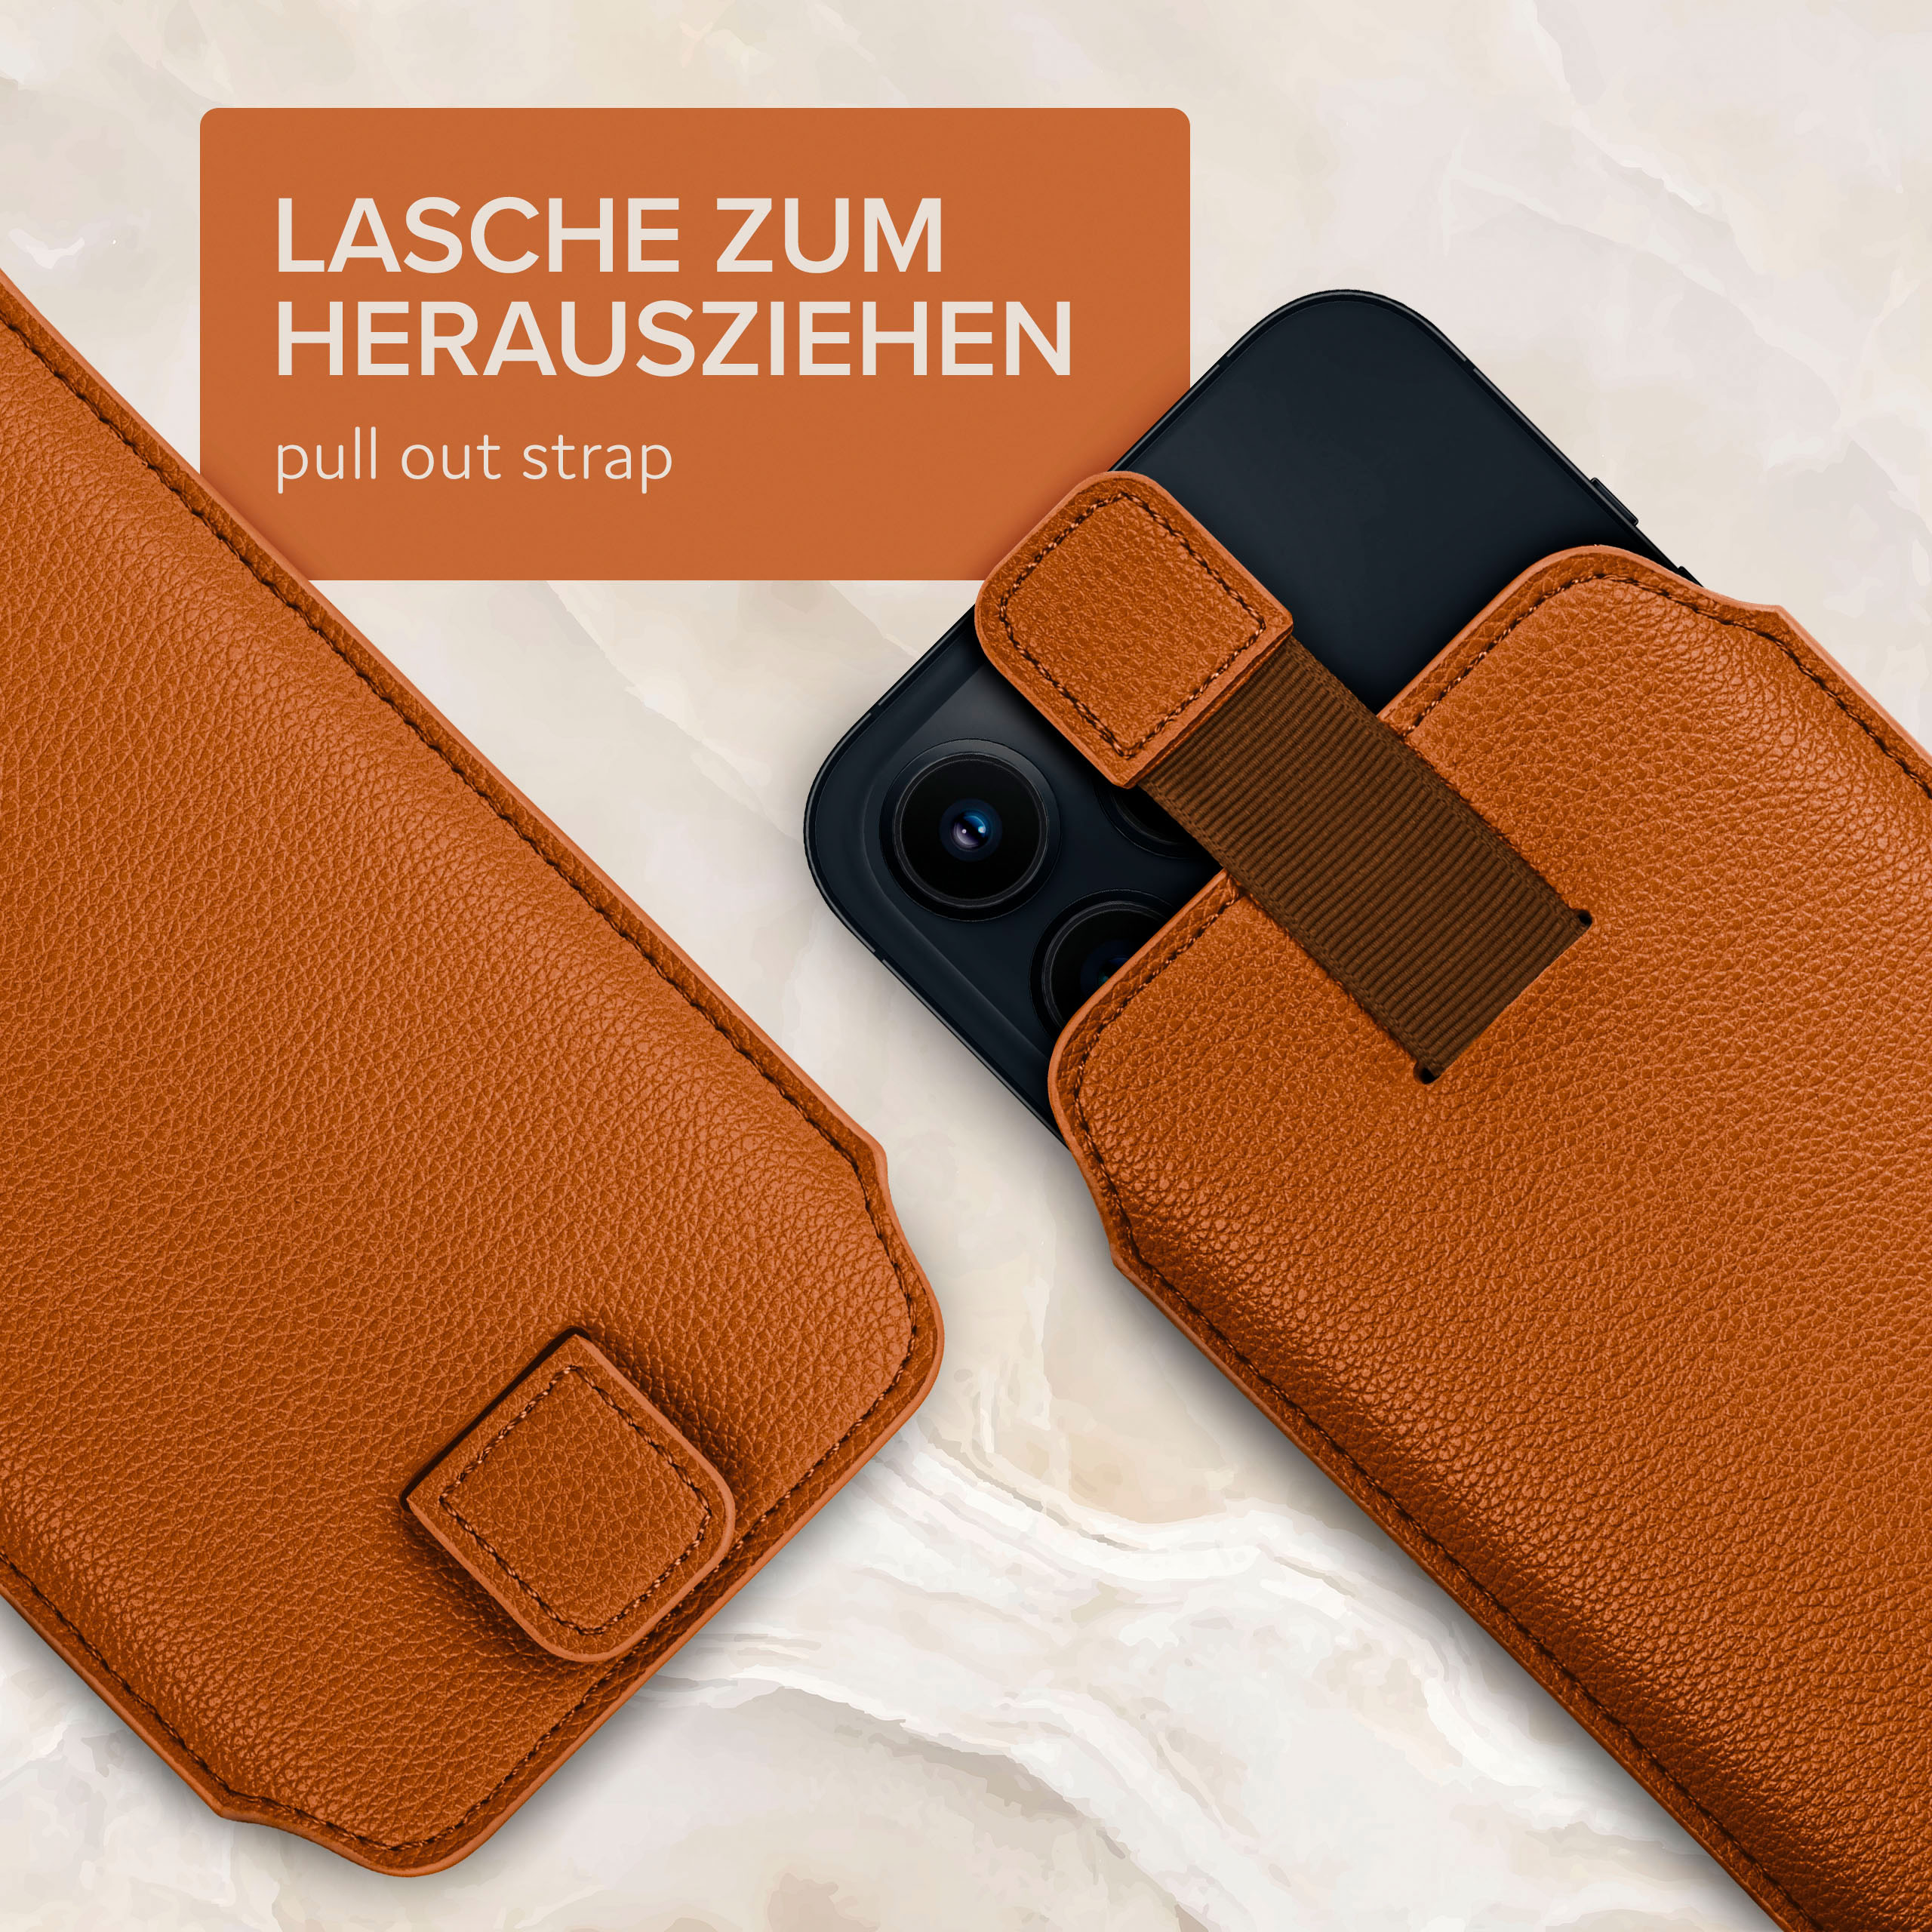 ONEFLOW Einsteckhülle Sattelbraun OnePlus, mit Zuglasche, Cover, Full 6